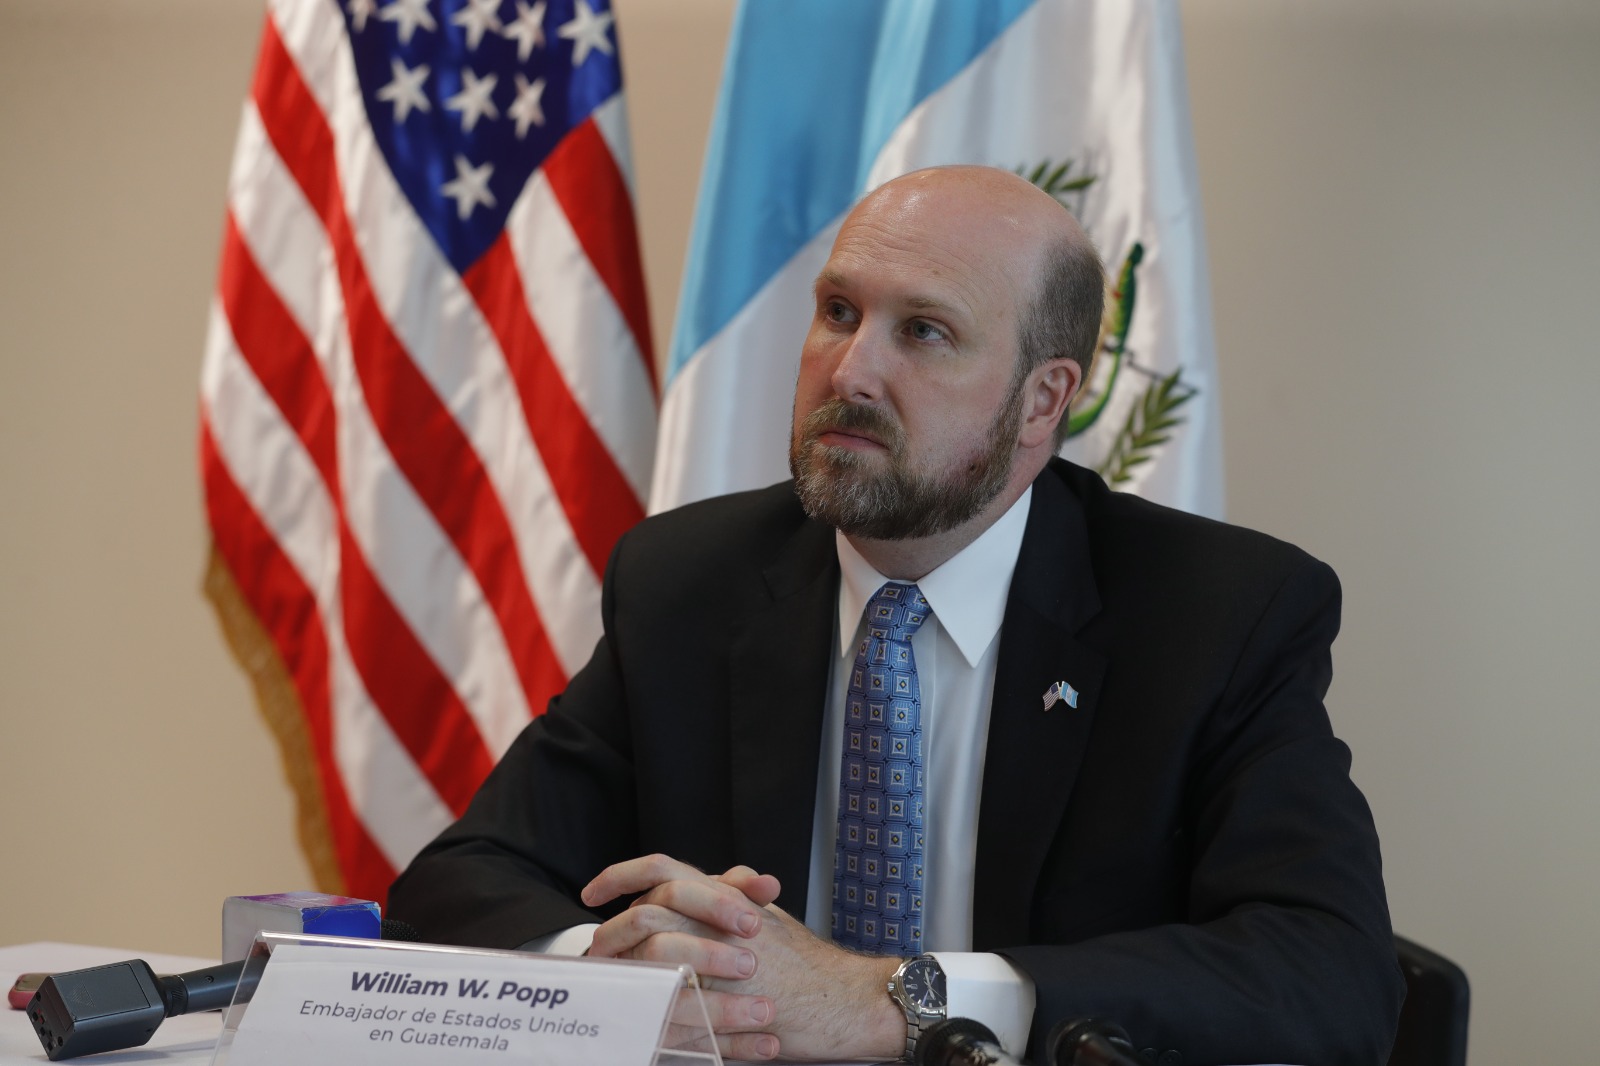 Embajador de Estados Unidos  en Guatemala William Popp. (Foto Prensa Libre: Carlos Hernández Ovalle)